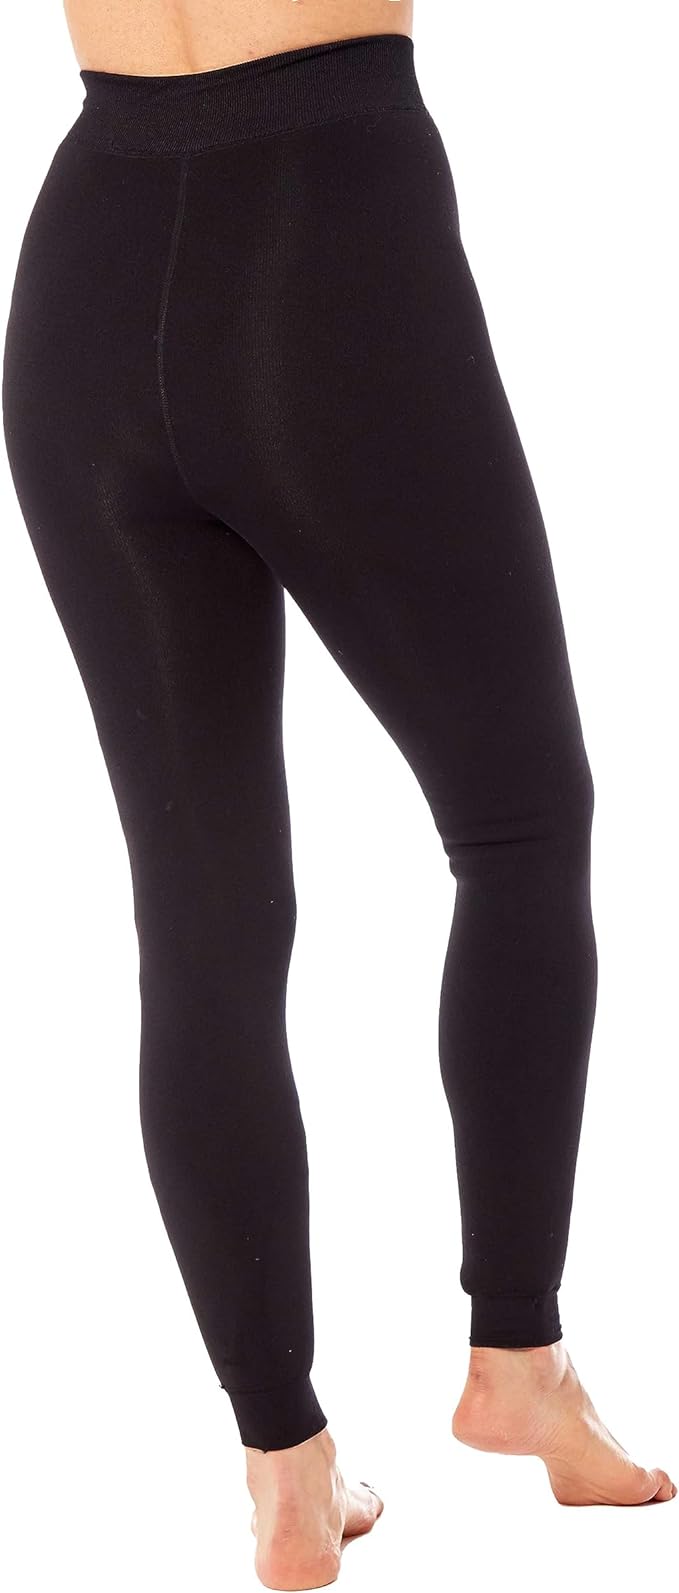 Fleece Lined Leggings 12 Pack Assorted Colors (Size: S/M-M/L-L/XL